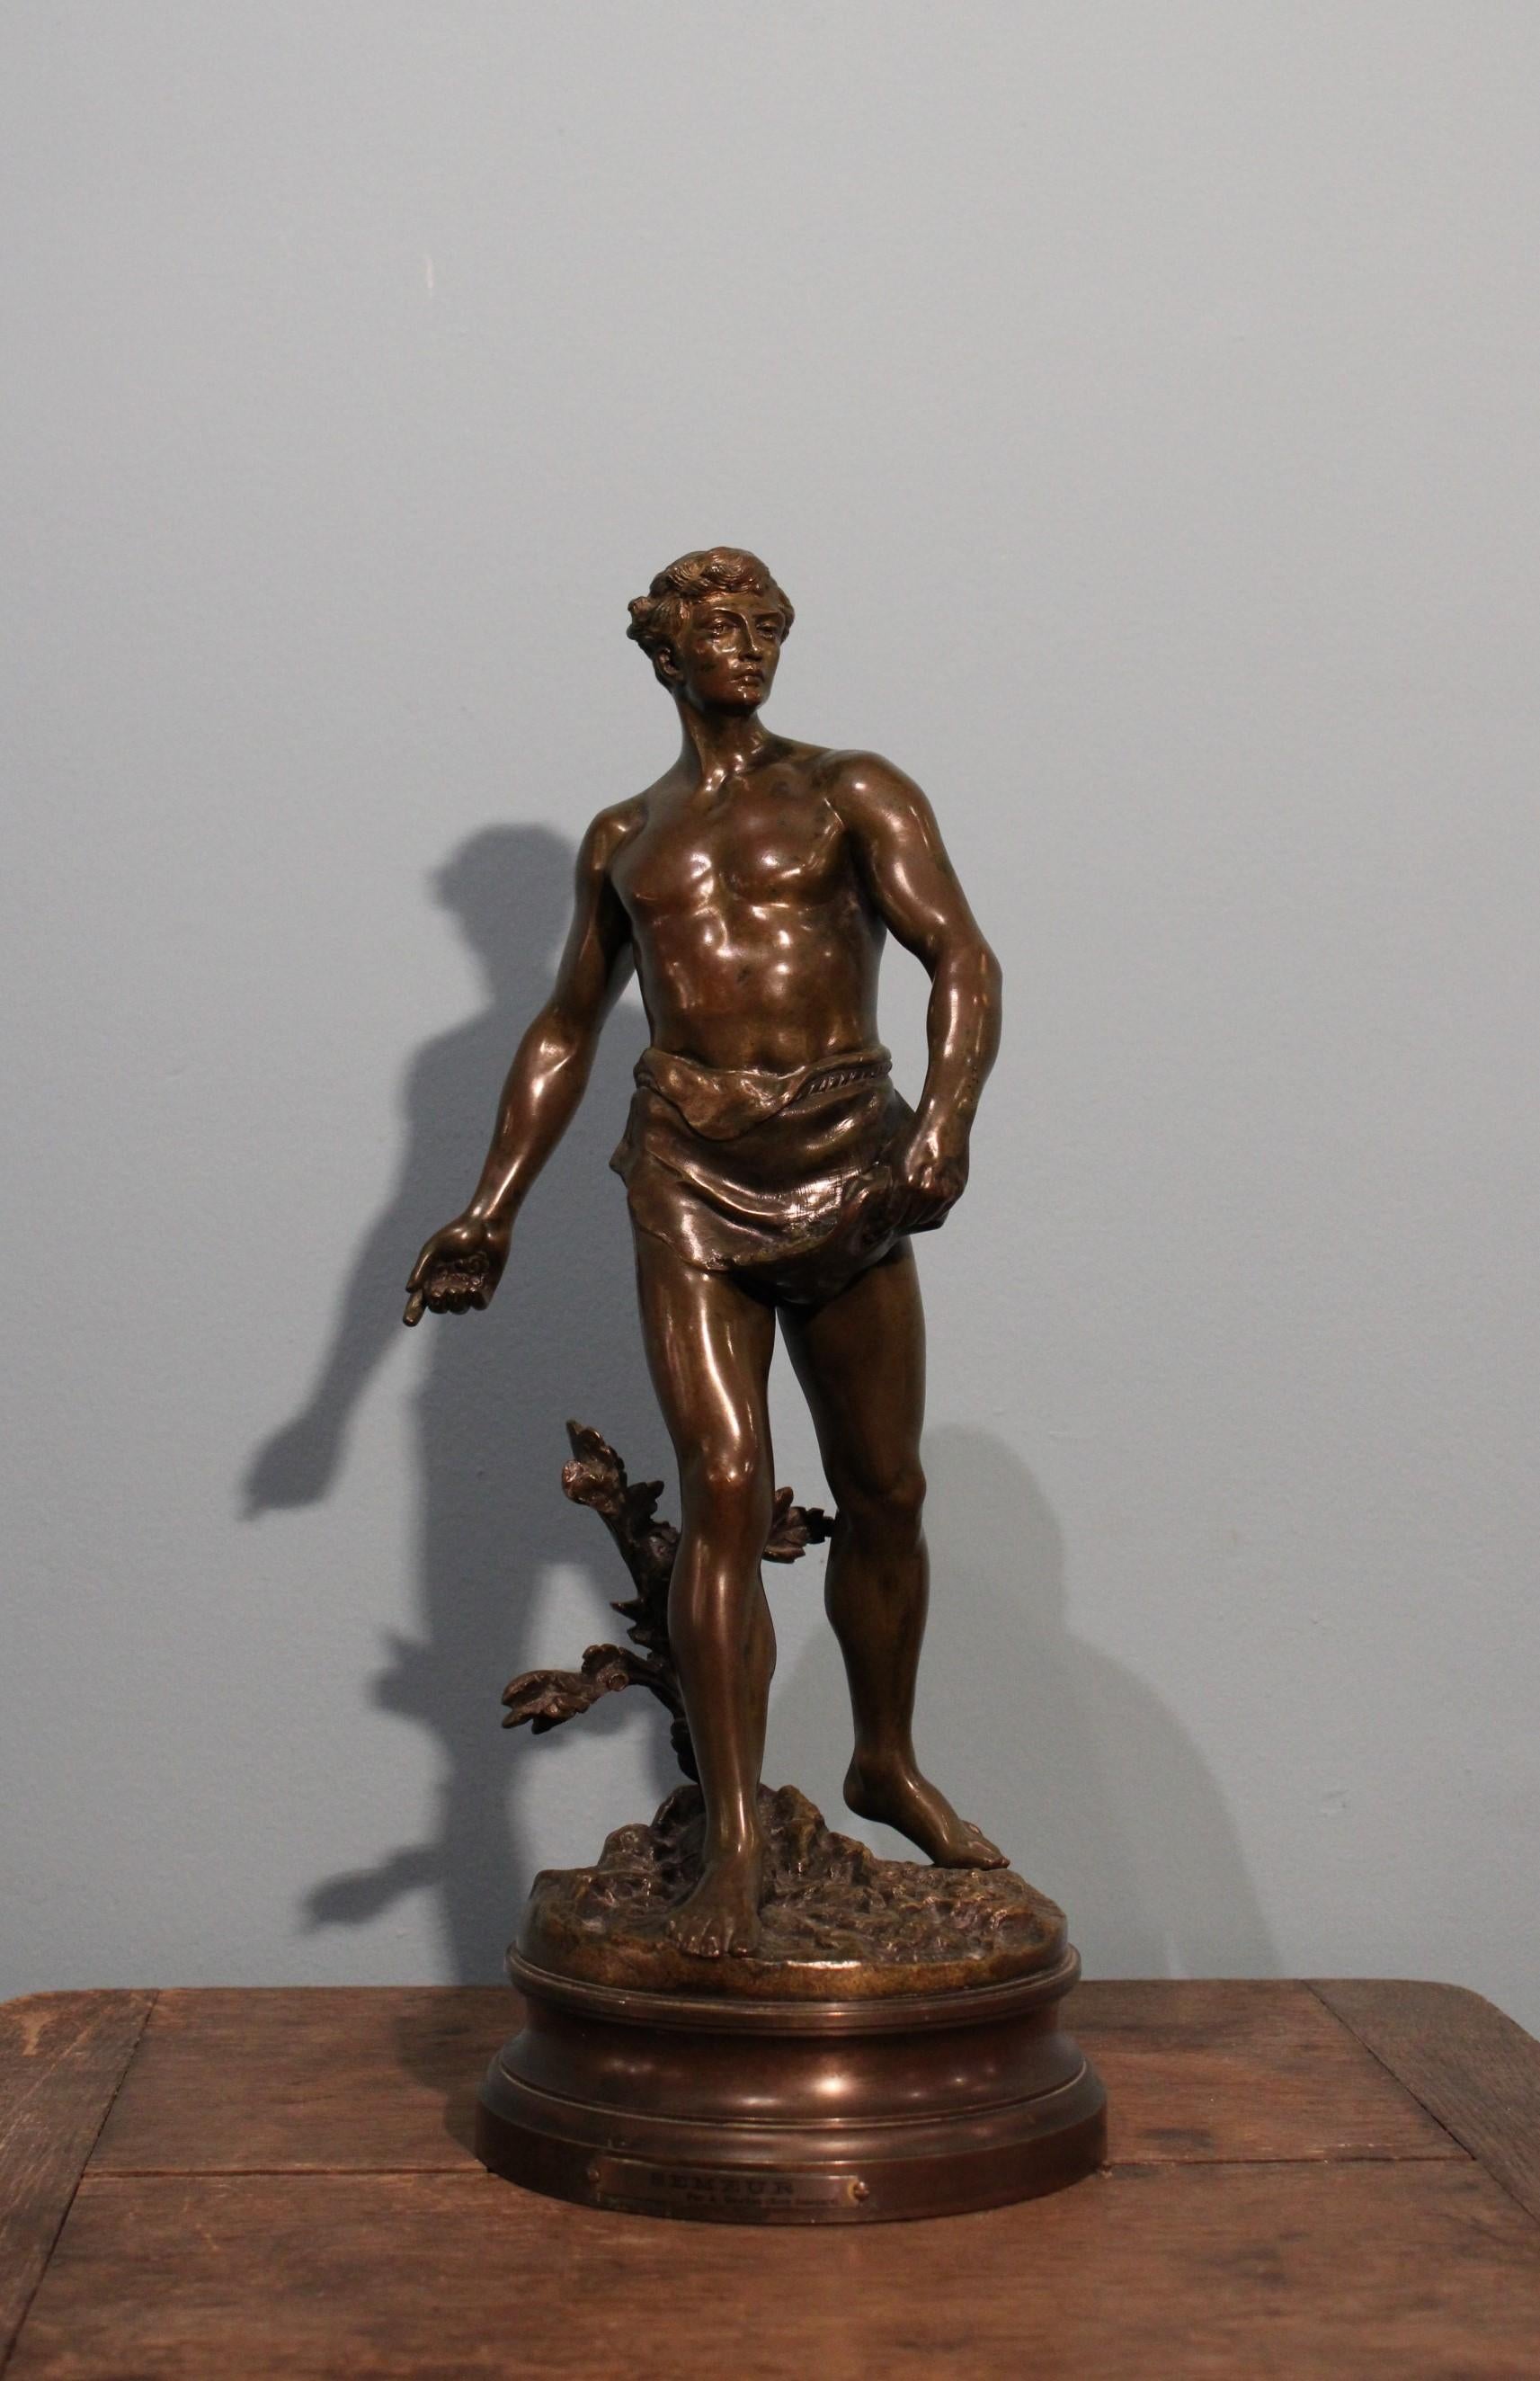 Sower bronze sculptor.